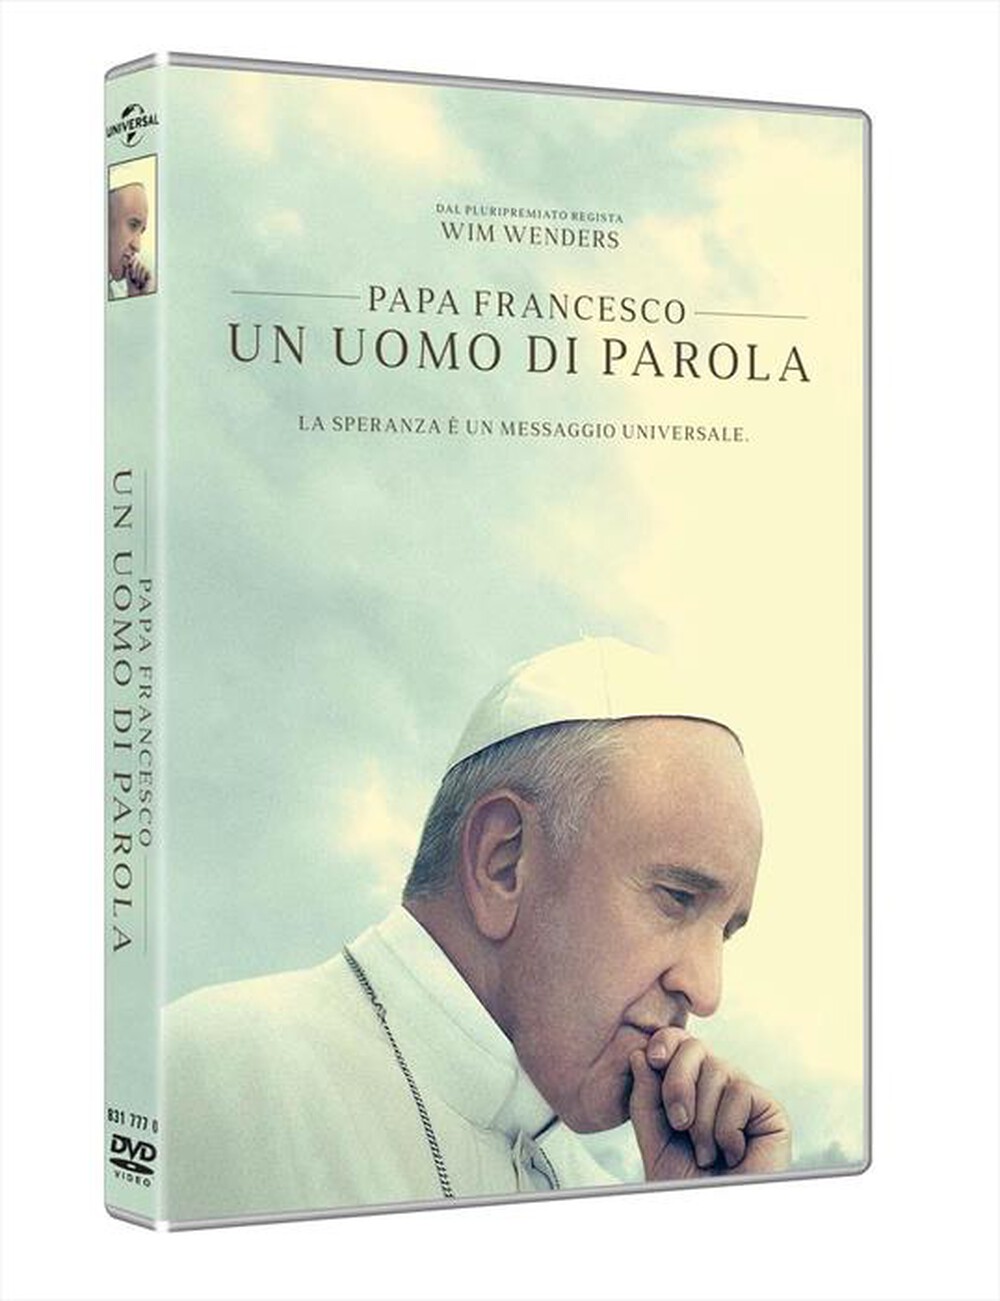 "WARNER HOME VIDEO - Papa Francesco: Un Uomo Di Parola - "